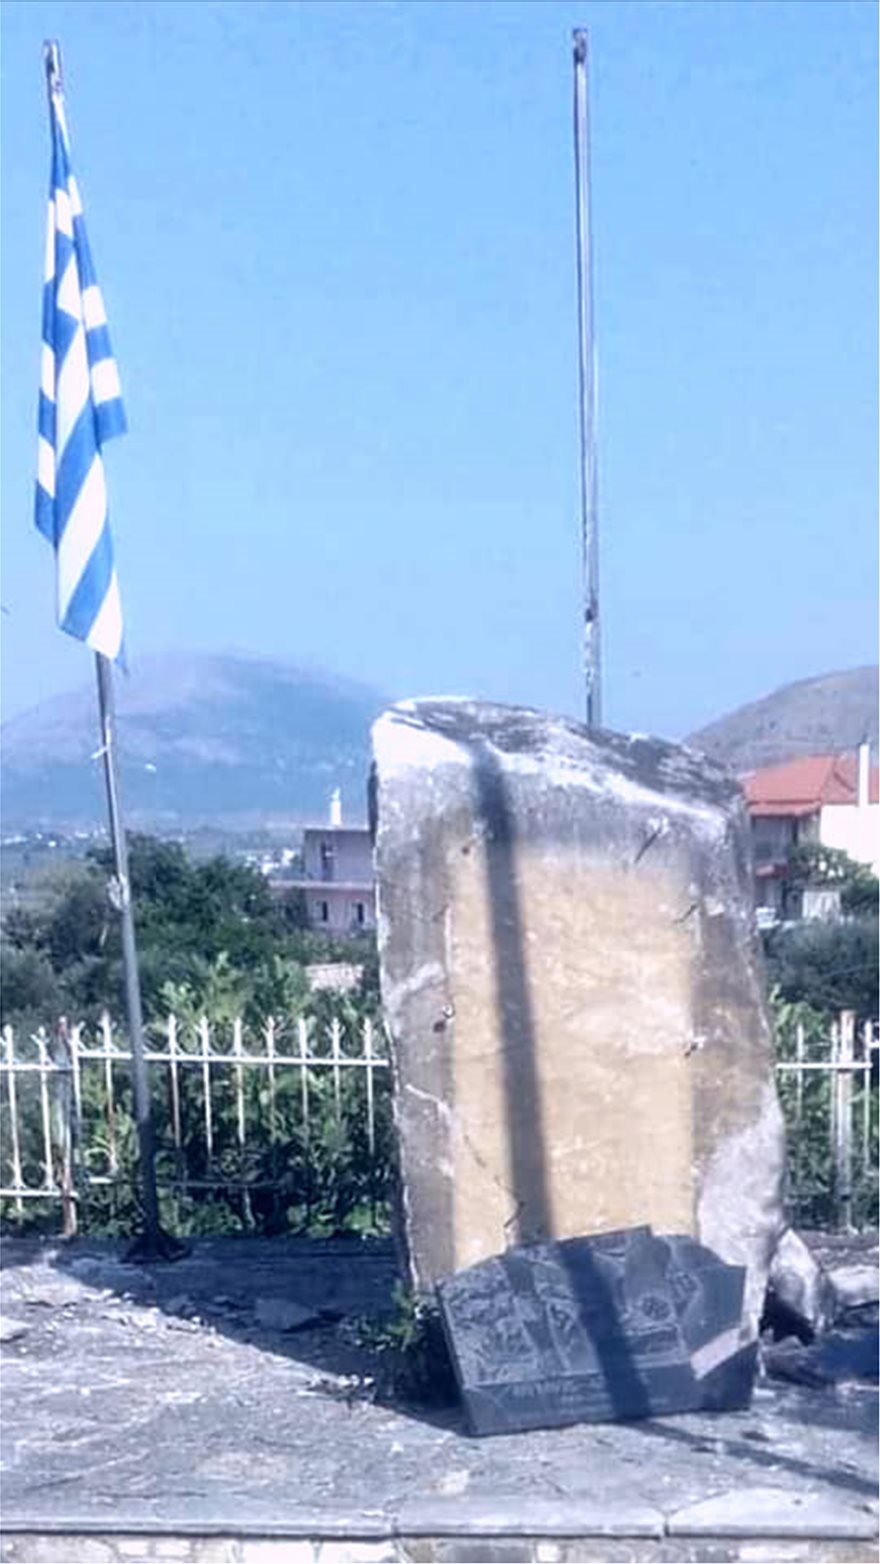 Αλβανοί εθνικιστές κατέστρεψαν μνημείο σε ελληνικό χωριό στη Βόρεια Ήπειρο - Φωτογραφία 7